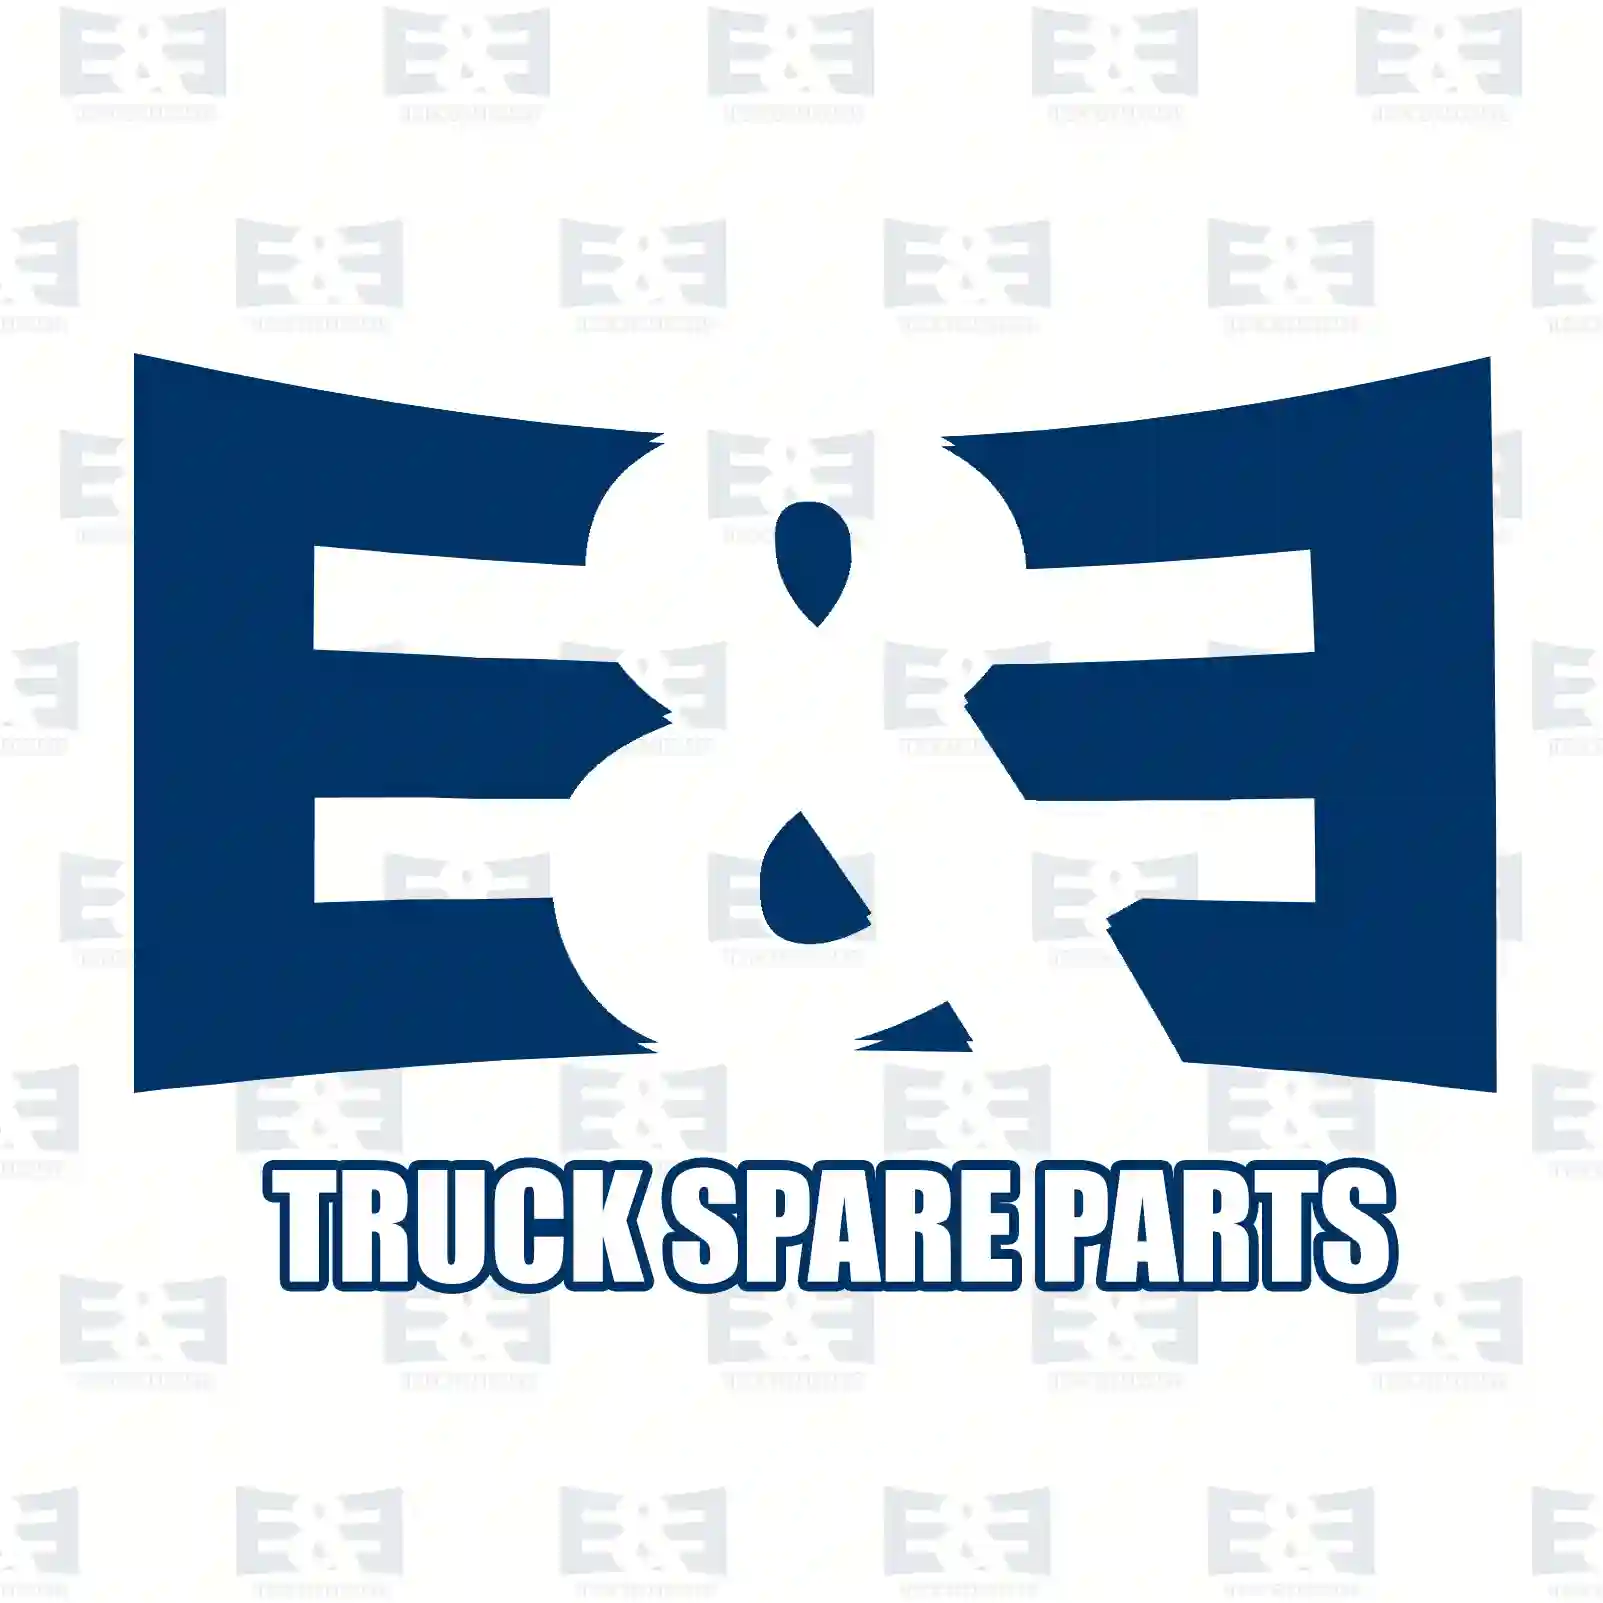 Clutch cover, 2E2289231, 81303050201, 81303059201, 81303050201 ||  2E2289231 E&E Truck Spare Parts | Truck Spare Parts, Auotomotive Spare Parts Clutch cover, 2E2289231, 81303050201, 81303059201, 81303050201 ||  2E2289231 E&E Truck Spare Parts | Truck Spare Parts, Auotomotive Spare Parts